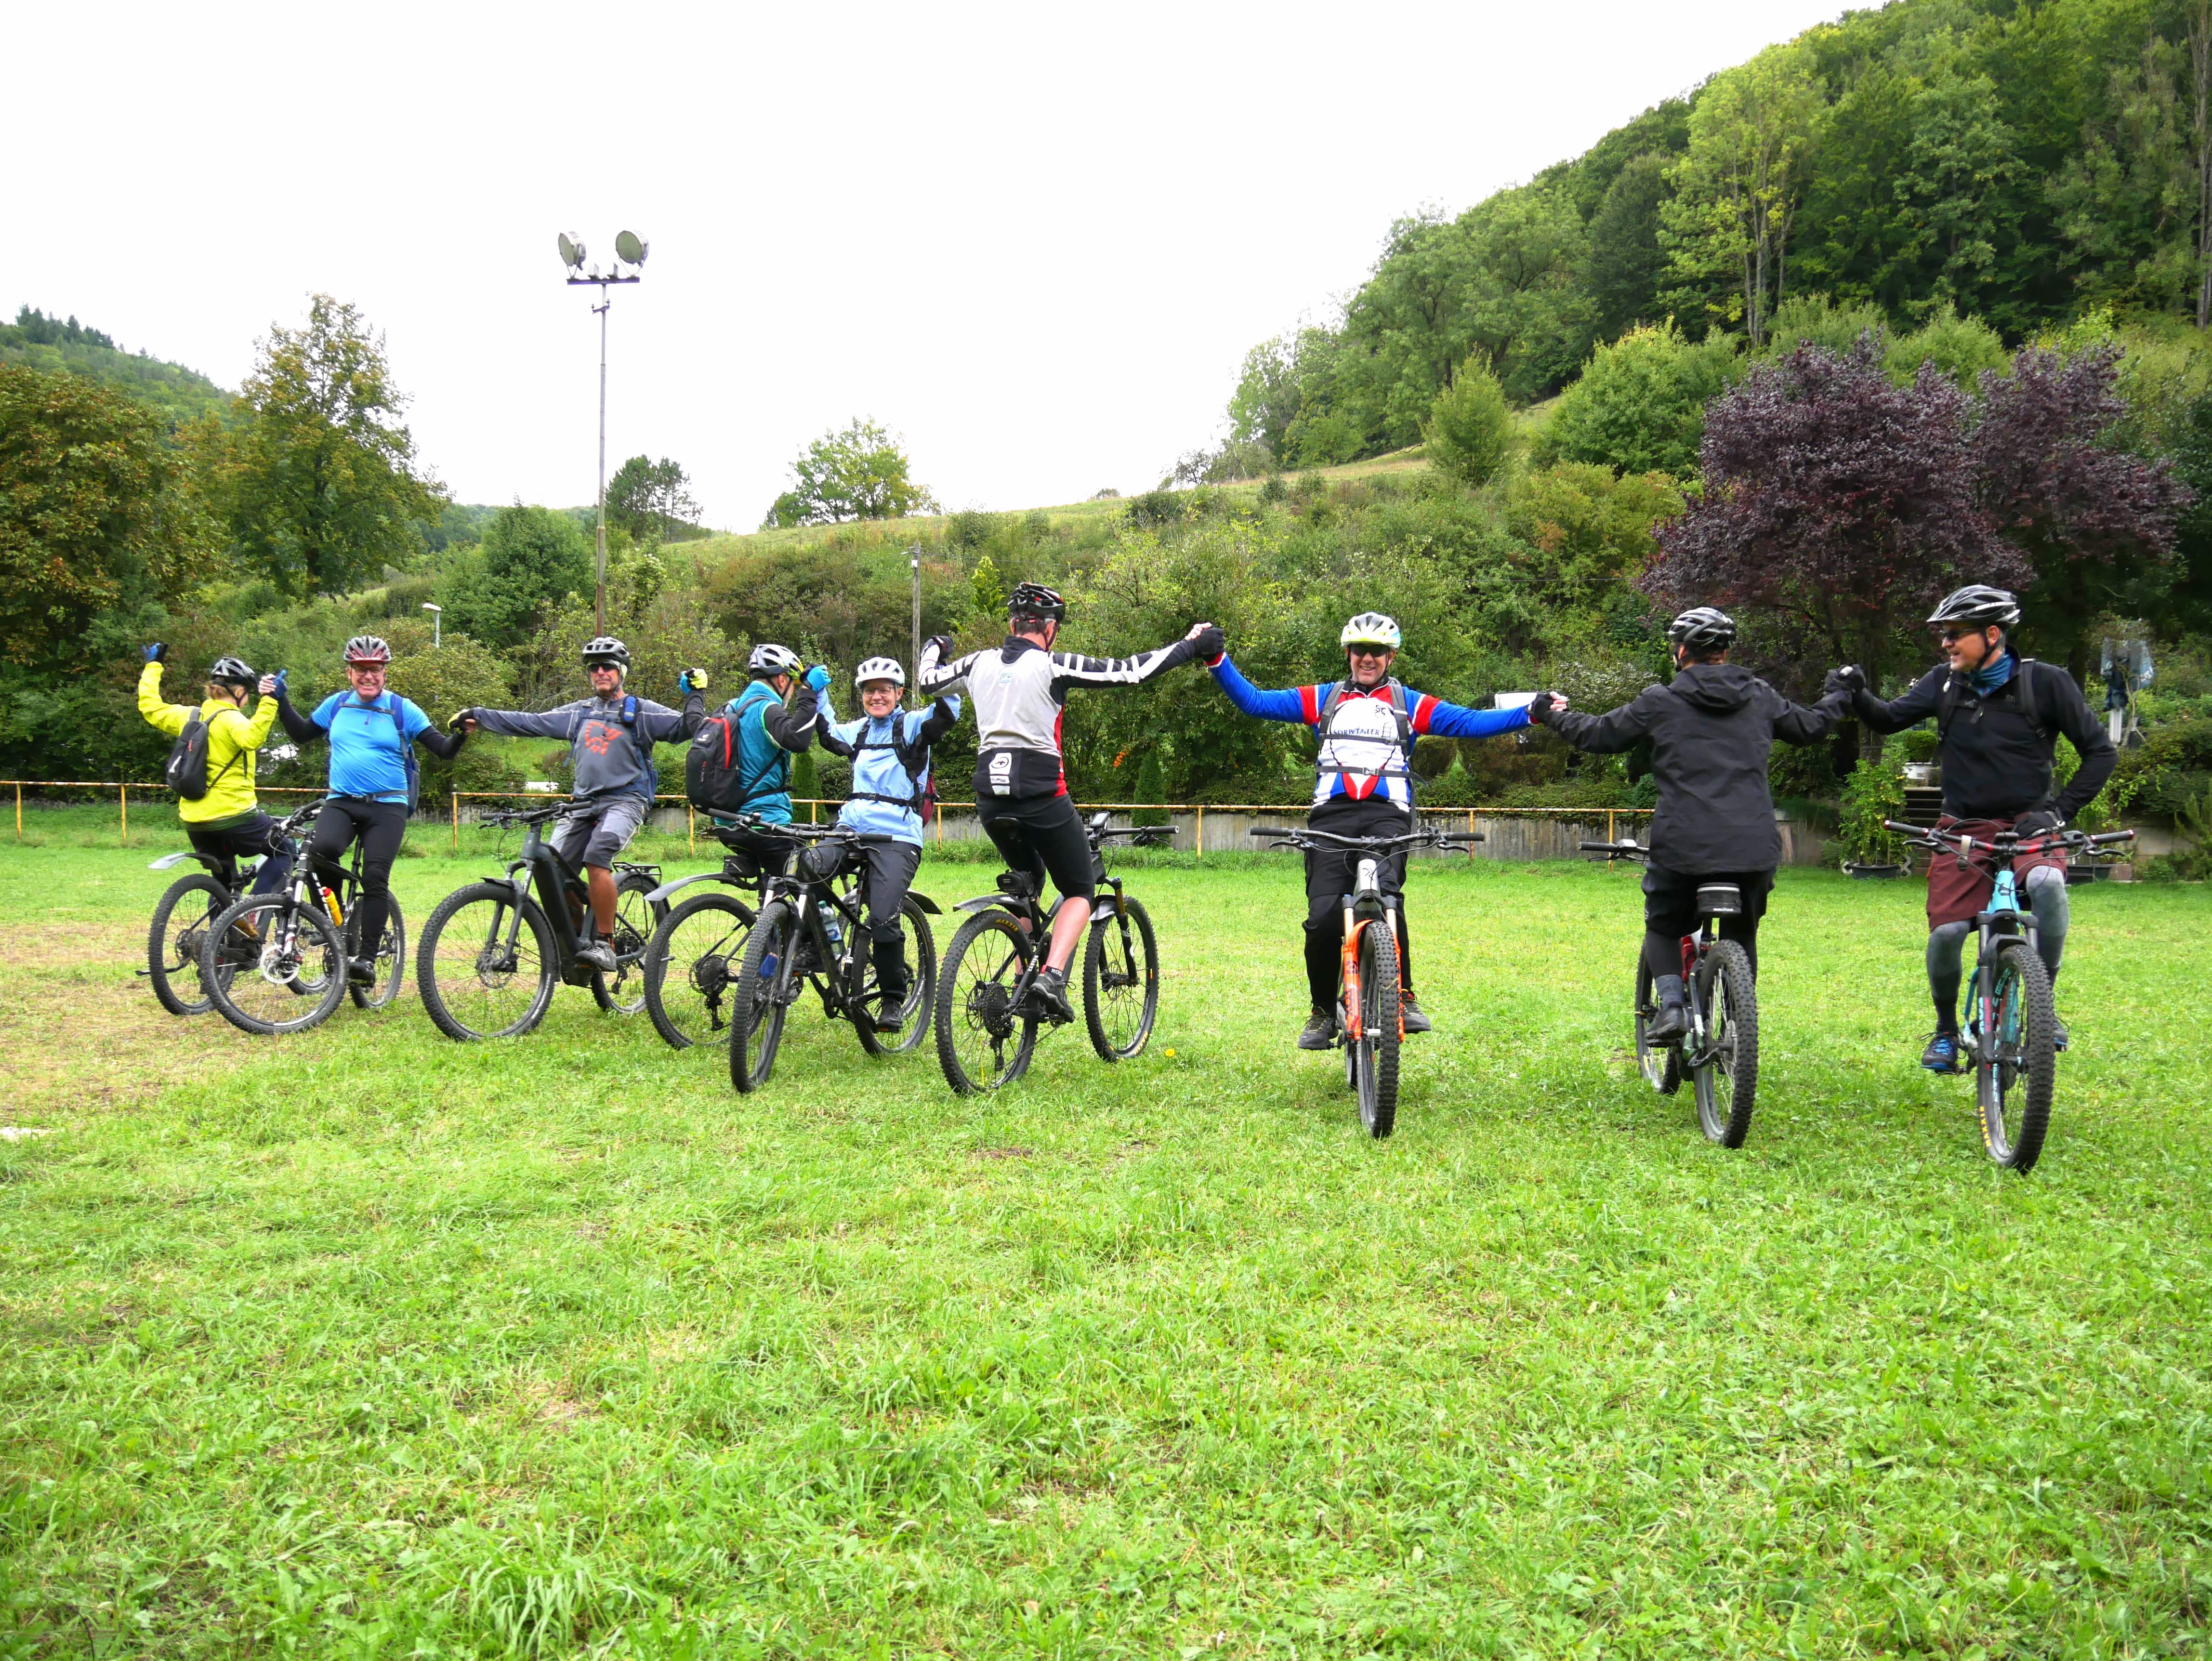 Mountainbike Technikktraining im Rahmen der Gea-Radserie im Biosphärengebiet Schwäbische Alb. Mehrere Radfahrer*innen stehen mit Fahrrädern nebeneinander in entgegengesetzte Richtungen und halten sich an den Händen.